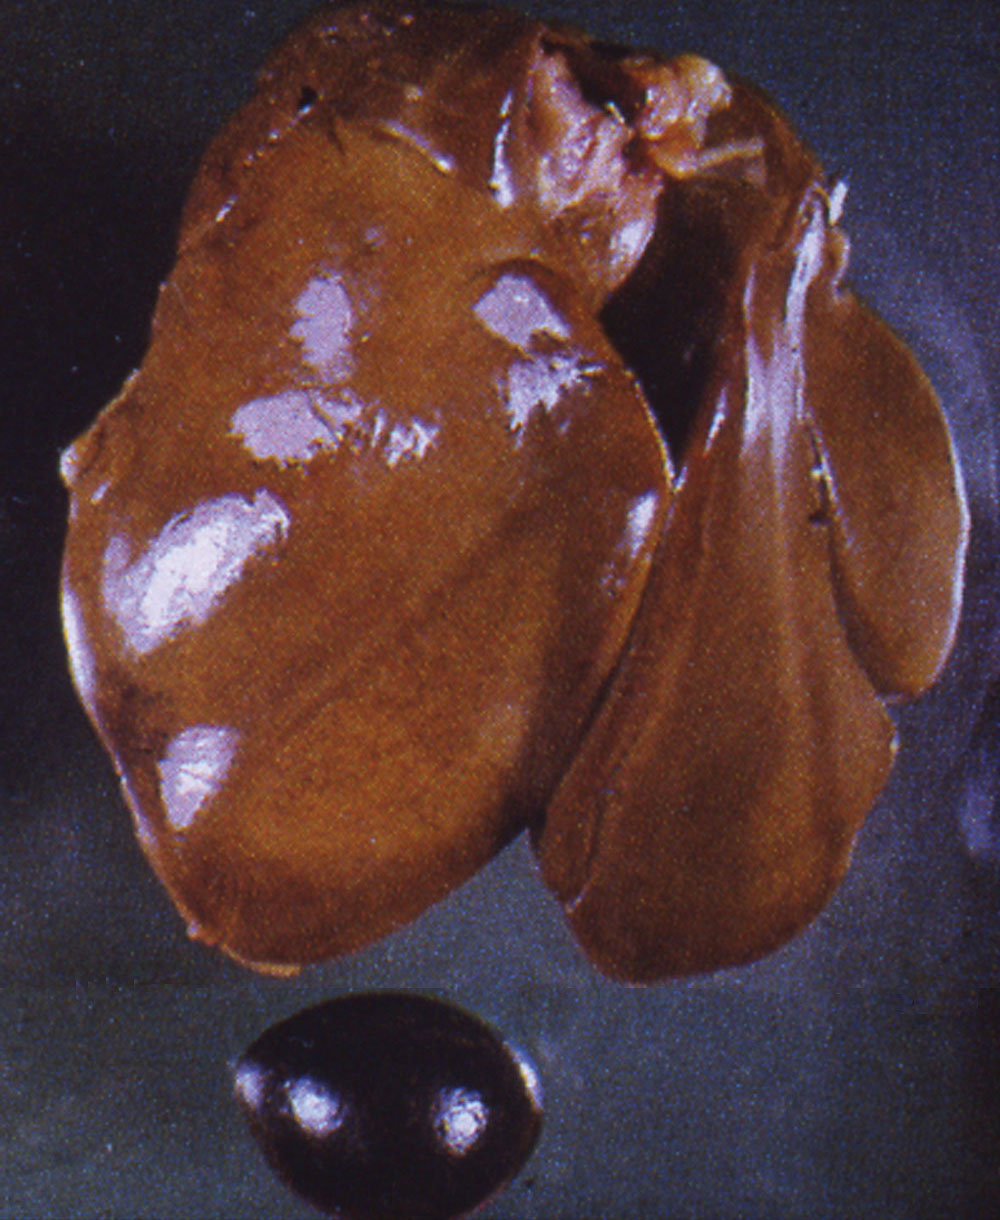 fowl-typhoid: Ave, hígado, bazo. El hígado esta pálido con coloración difusa marrón- amarillenta (bronceada); congestión esplénica y agrandamiento. 